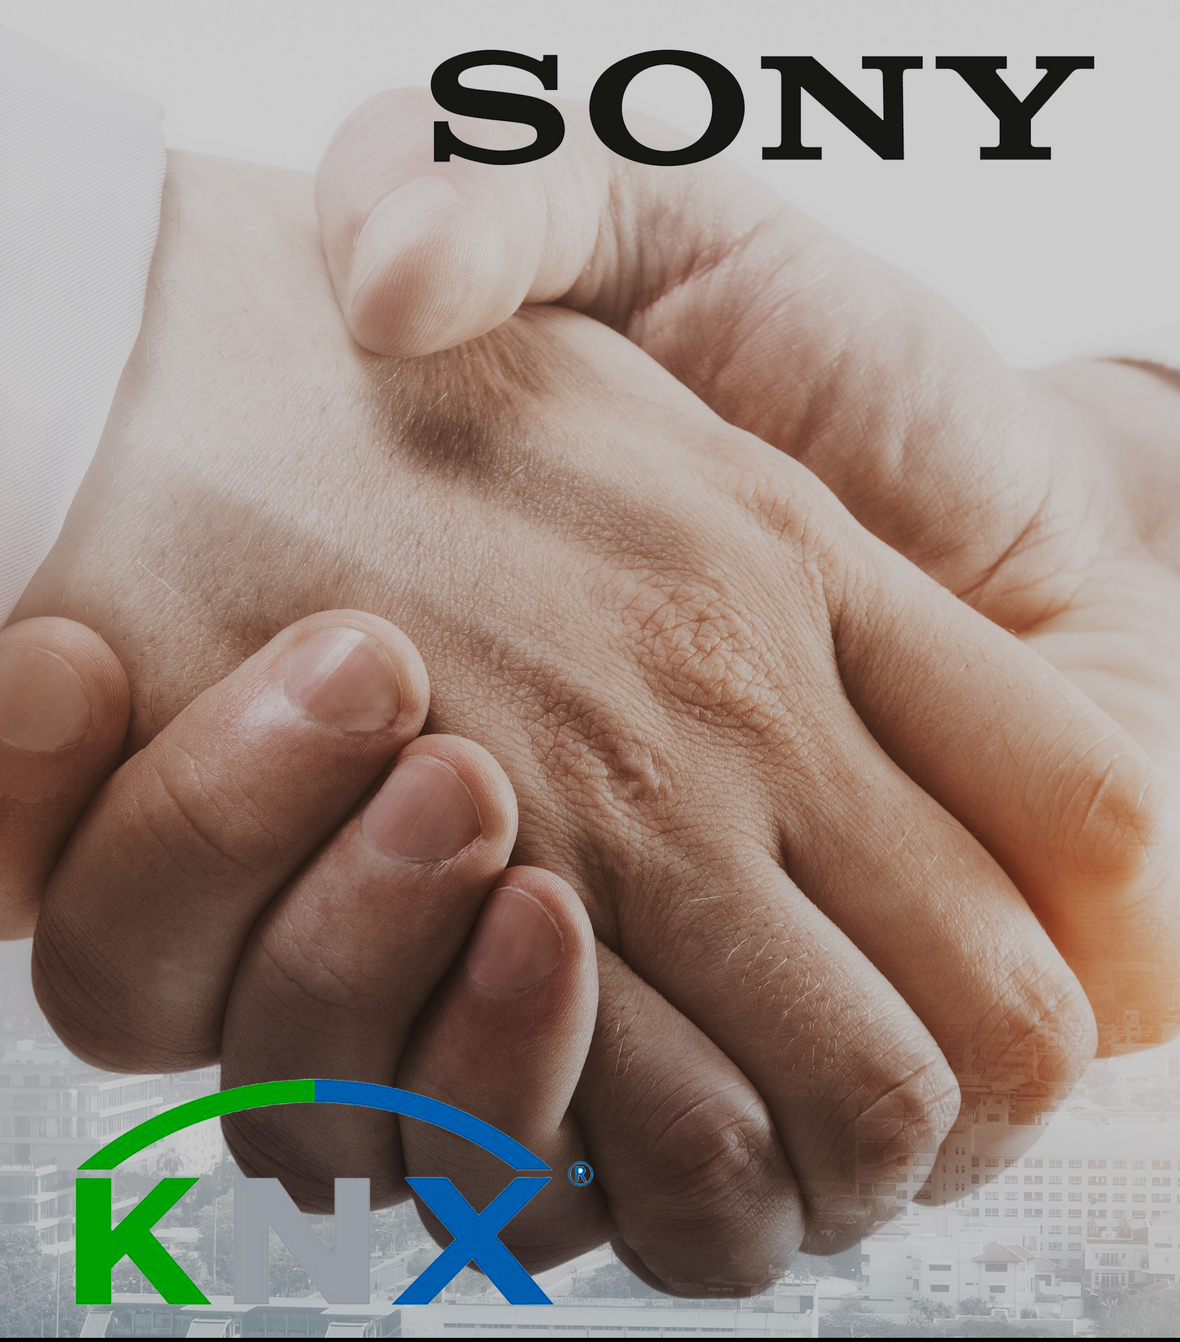 KNX accueille Sony comme 500ème membre : le partenariat vient souligner la popularité croissante de KNX IoT